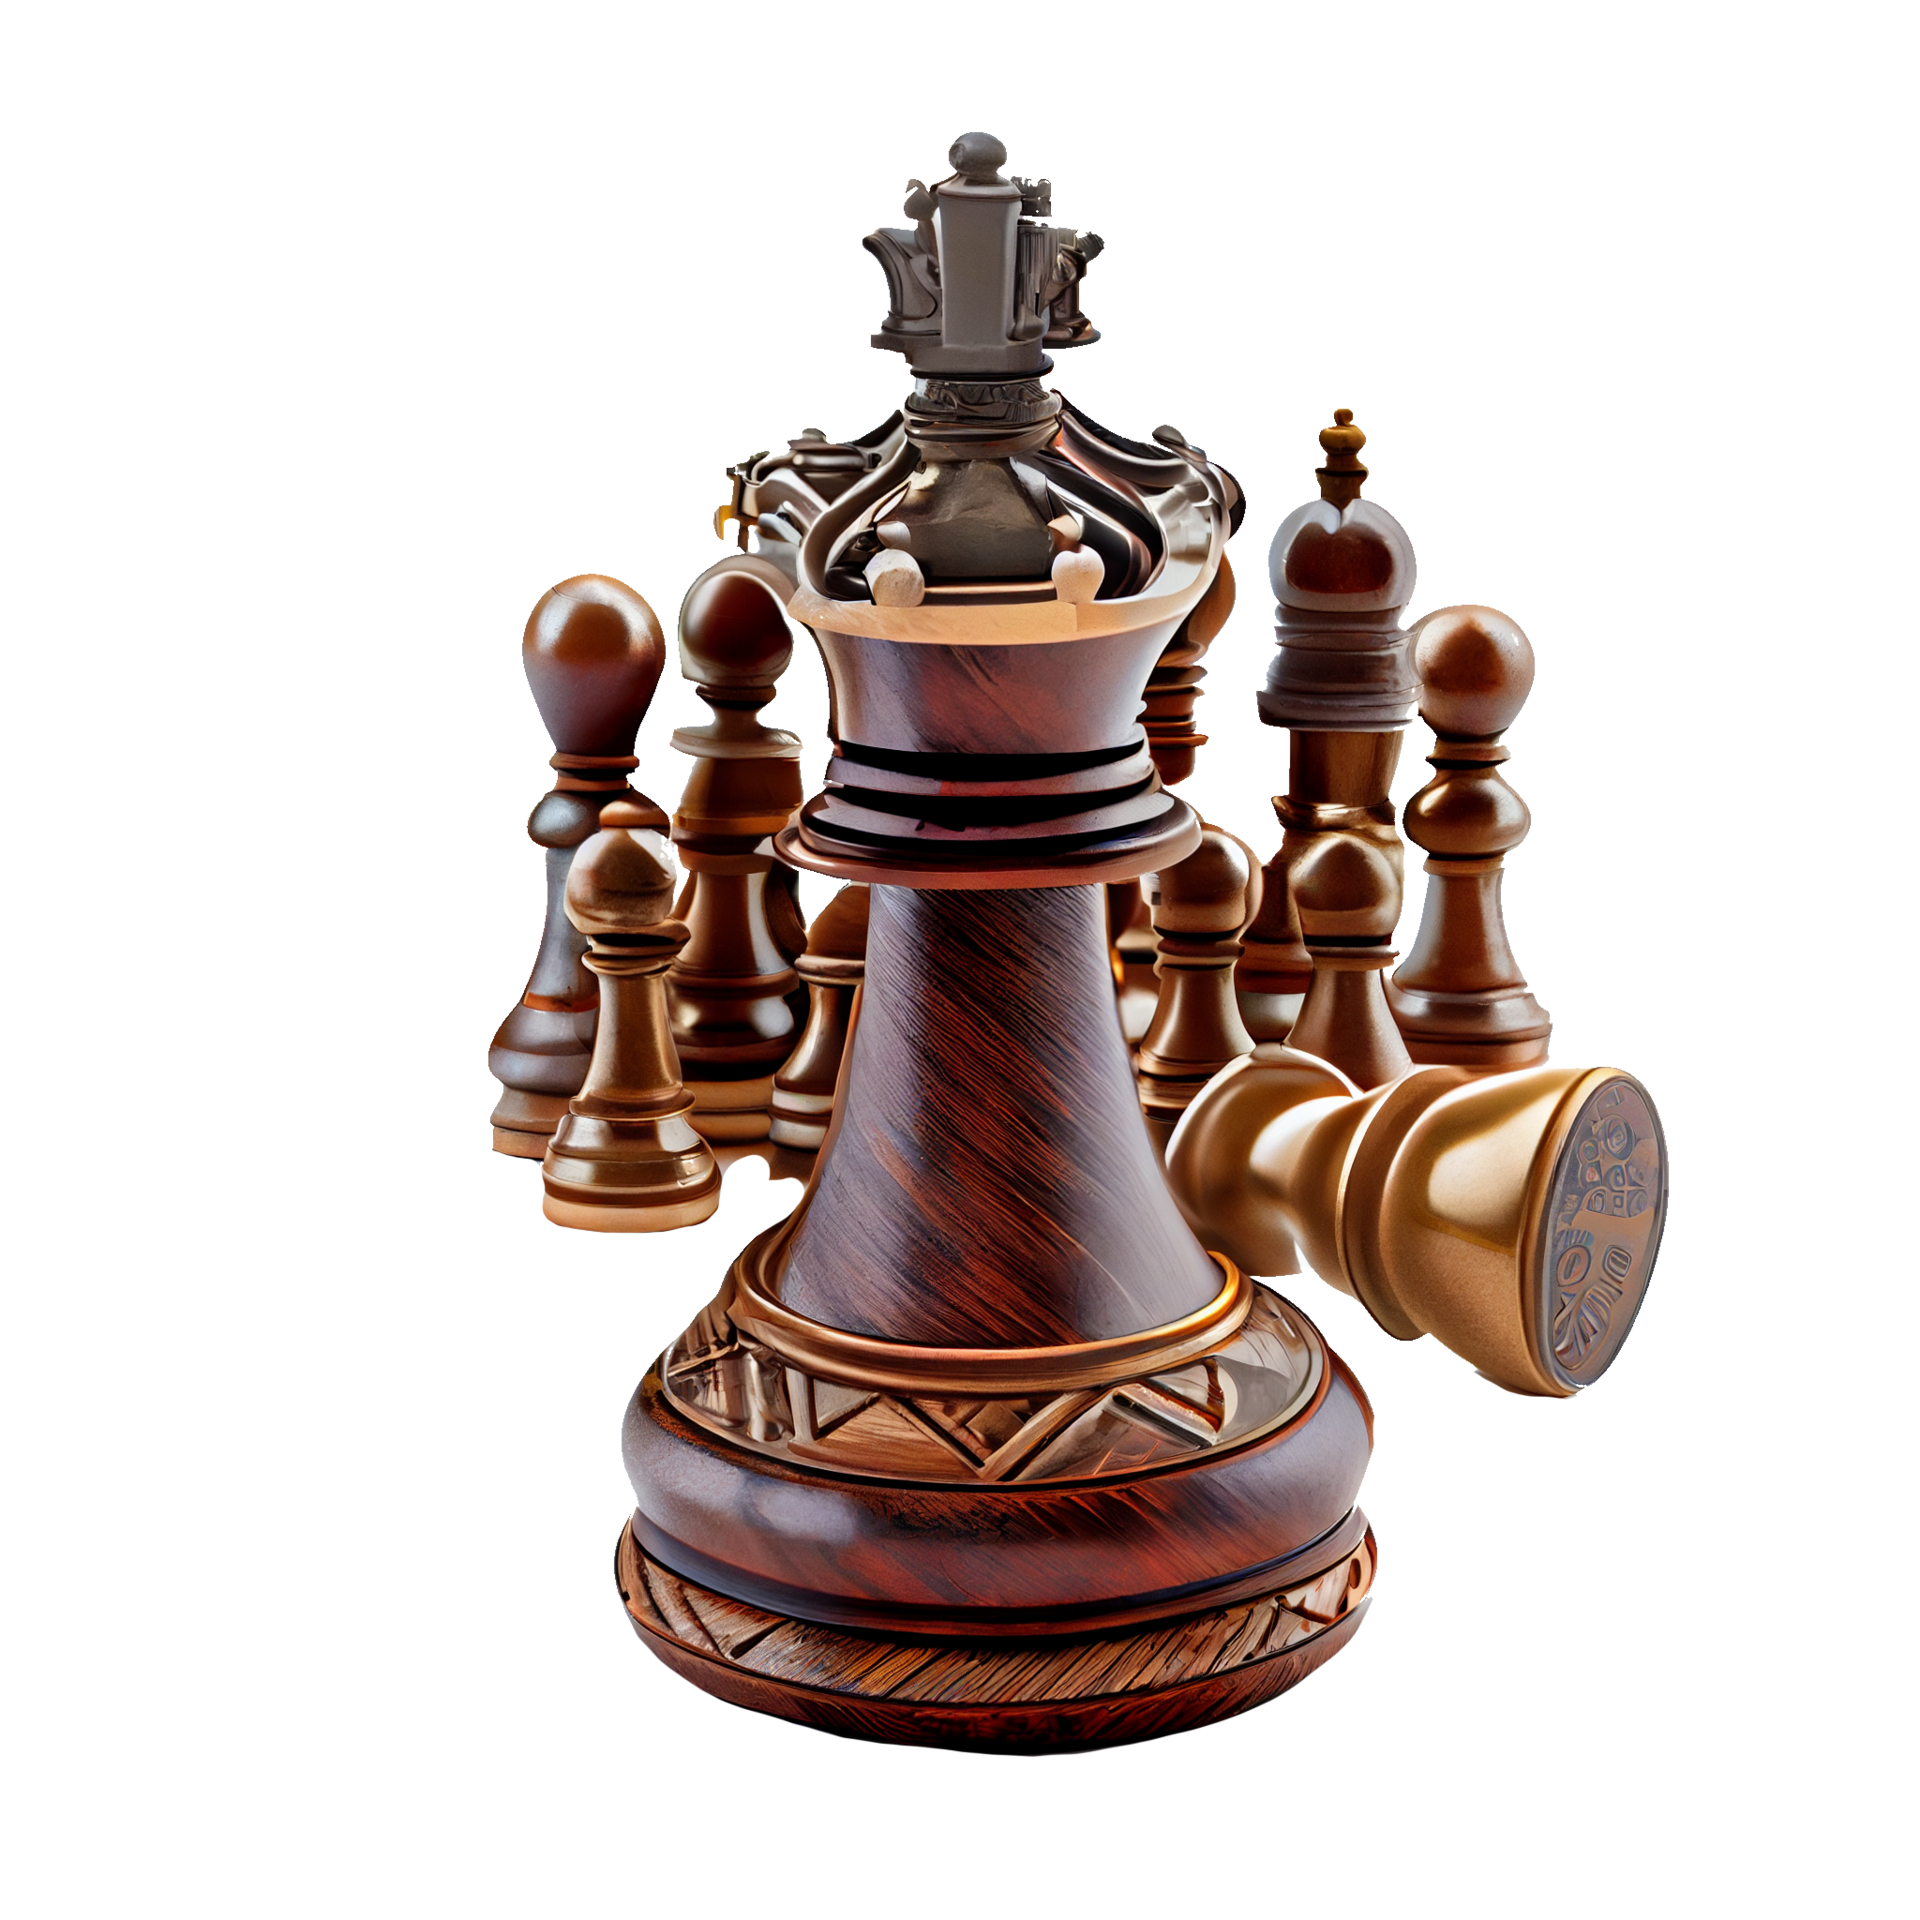 Barraca de xadrez do rei foto de stock. Imagem de fundo - 248808434